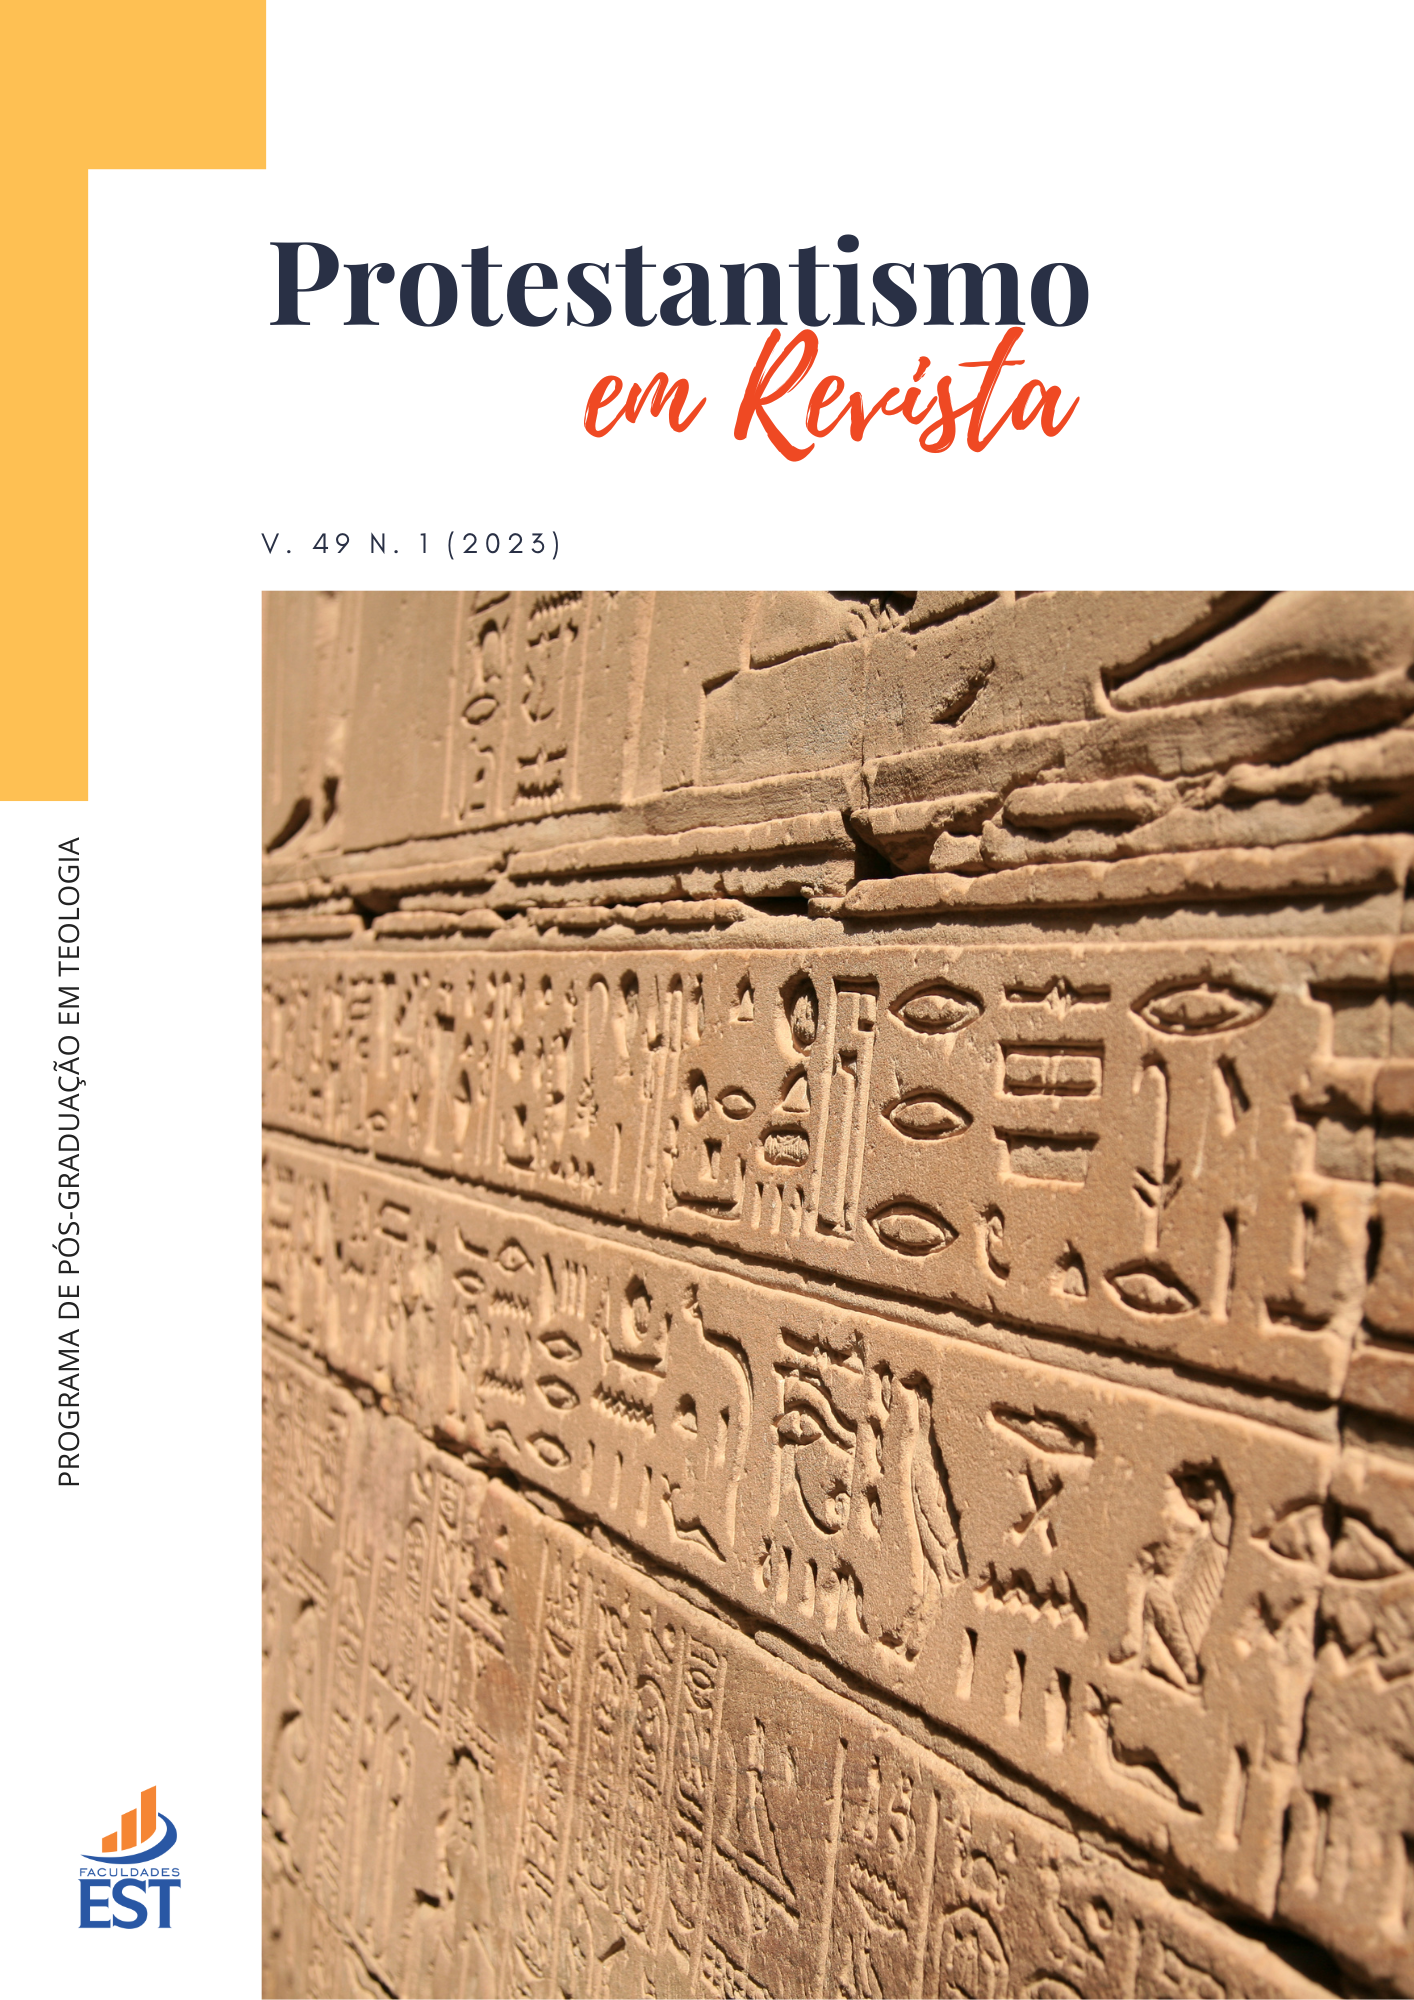 					View Vol. 49 No. 1 (2023): Estudo da Literatura Hermetica na História das Antigas Religiões Mediterrâneas
				